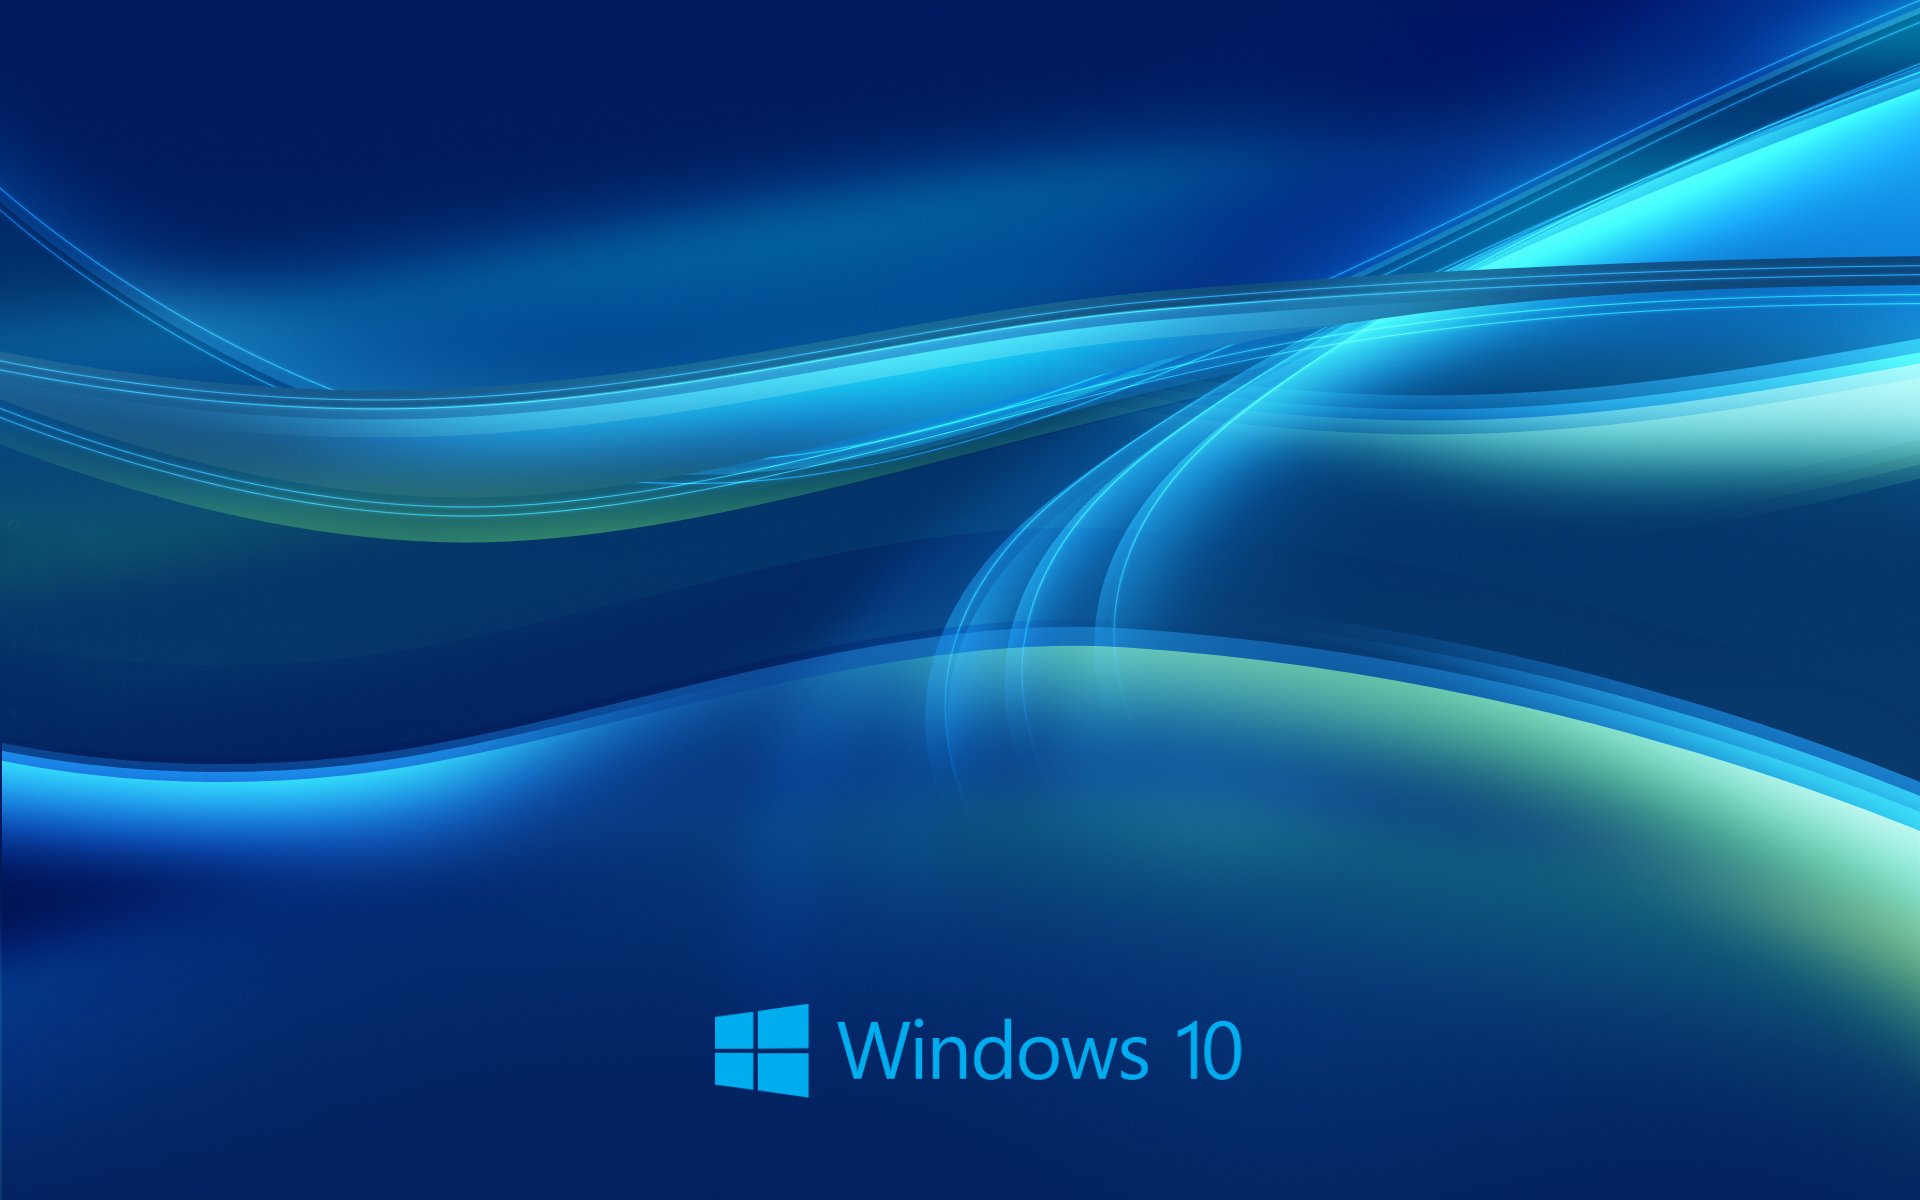 Windows 10 Wallpaper Downlaod 12441 Wallpaper High Resolution 1920x1200